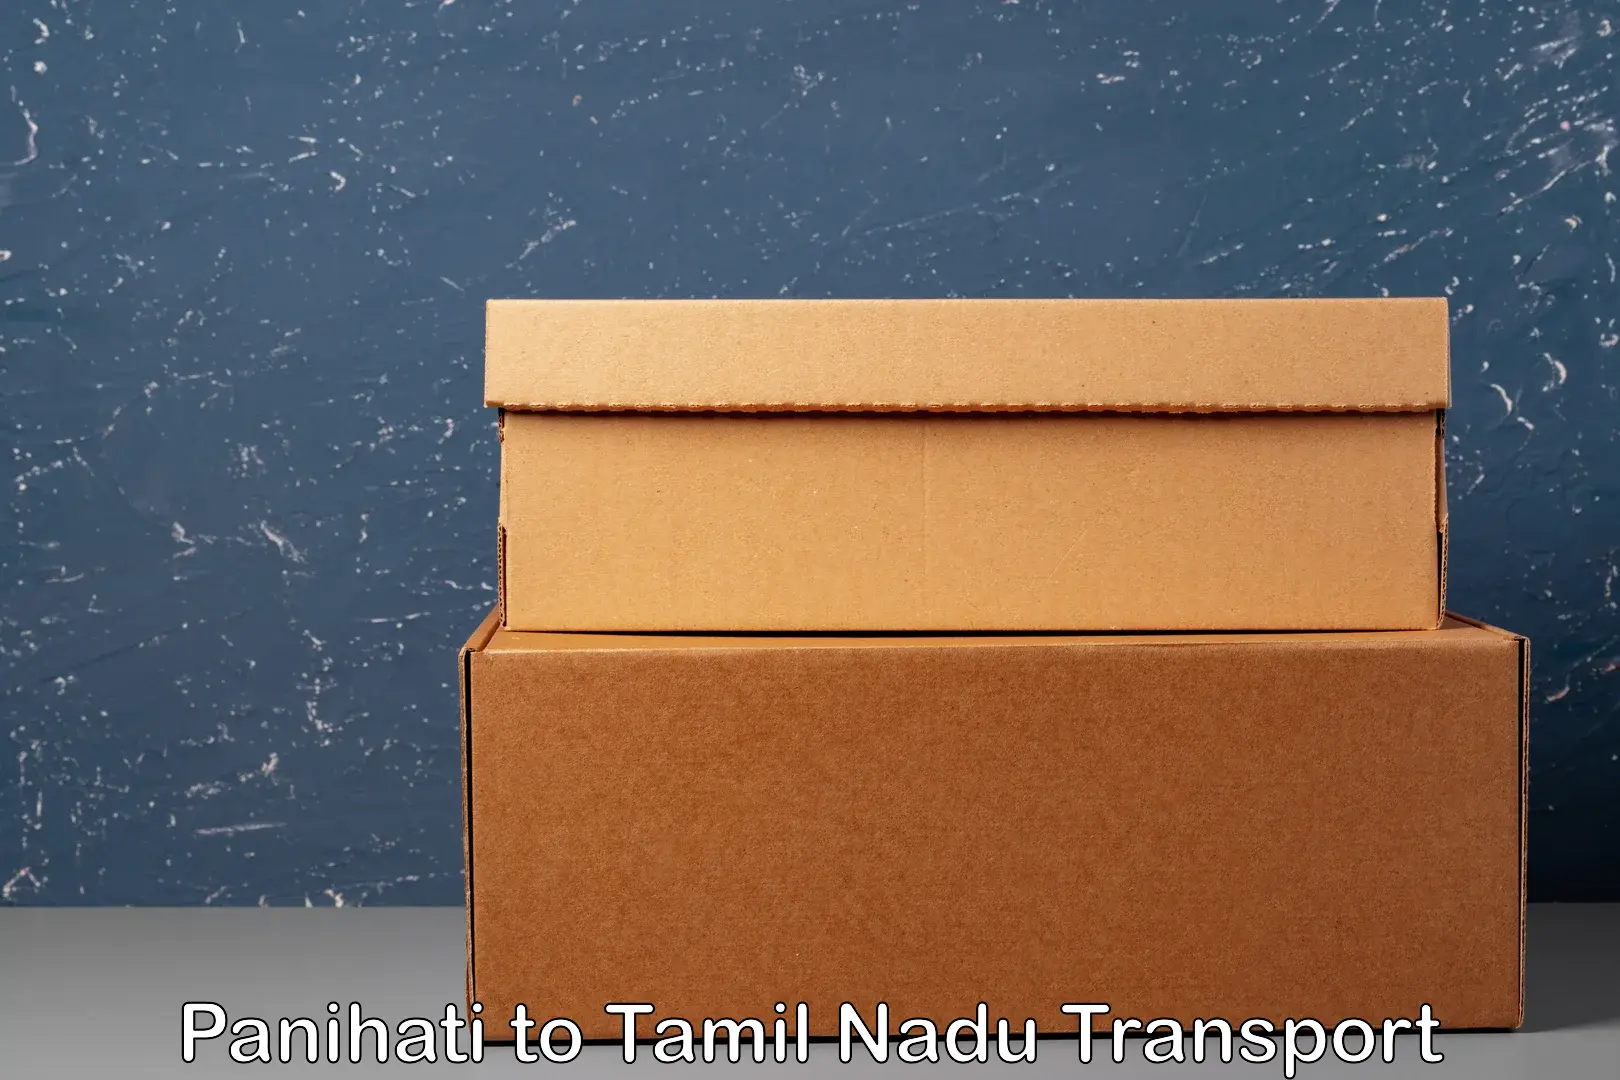 Door to door transport services in Panihati to Tamil Nadu